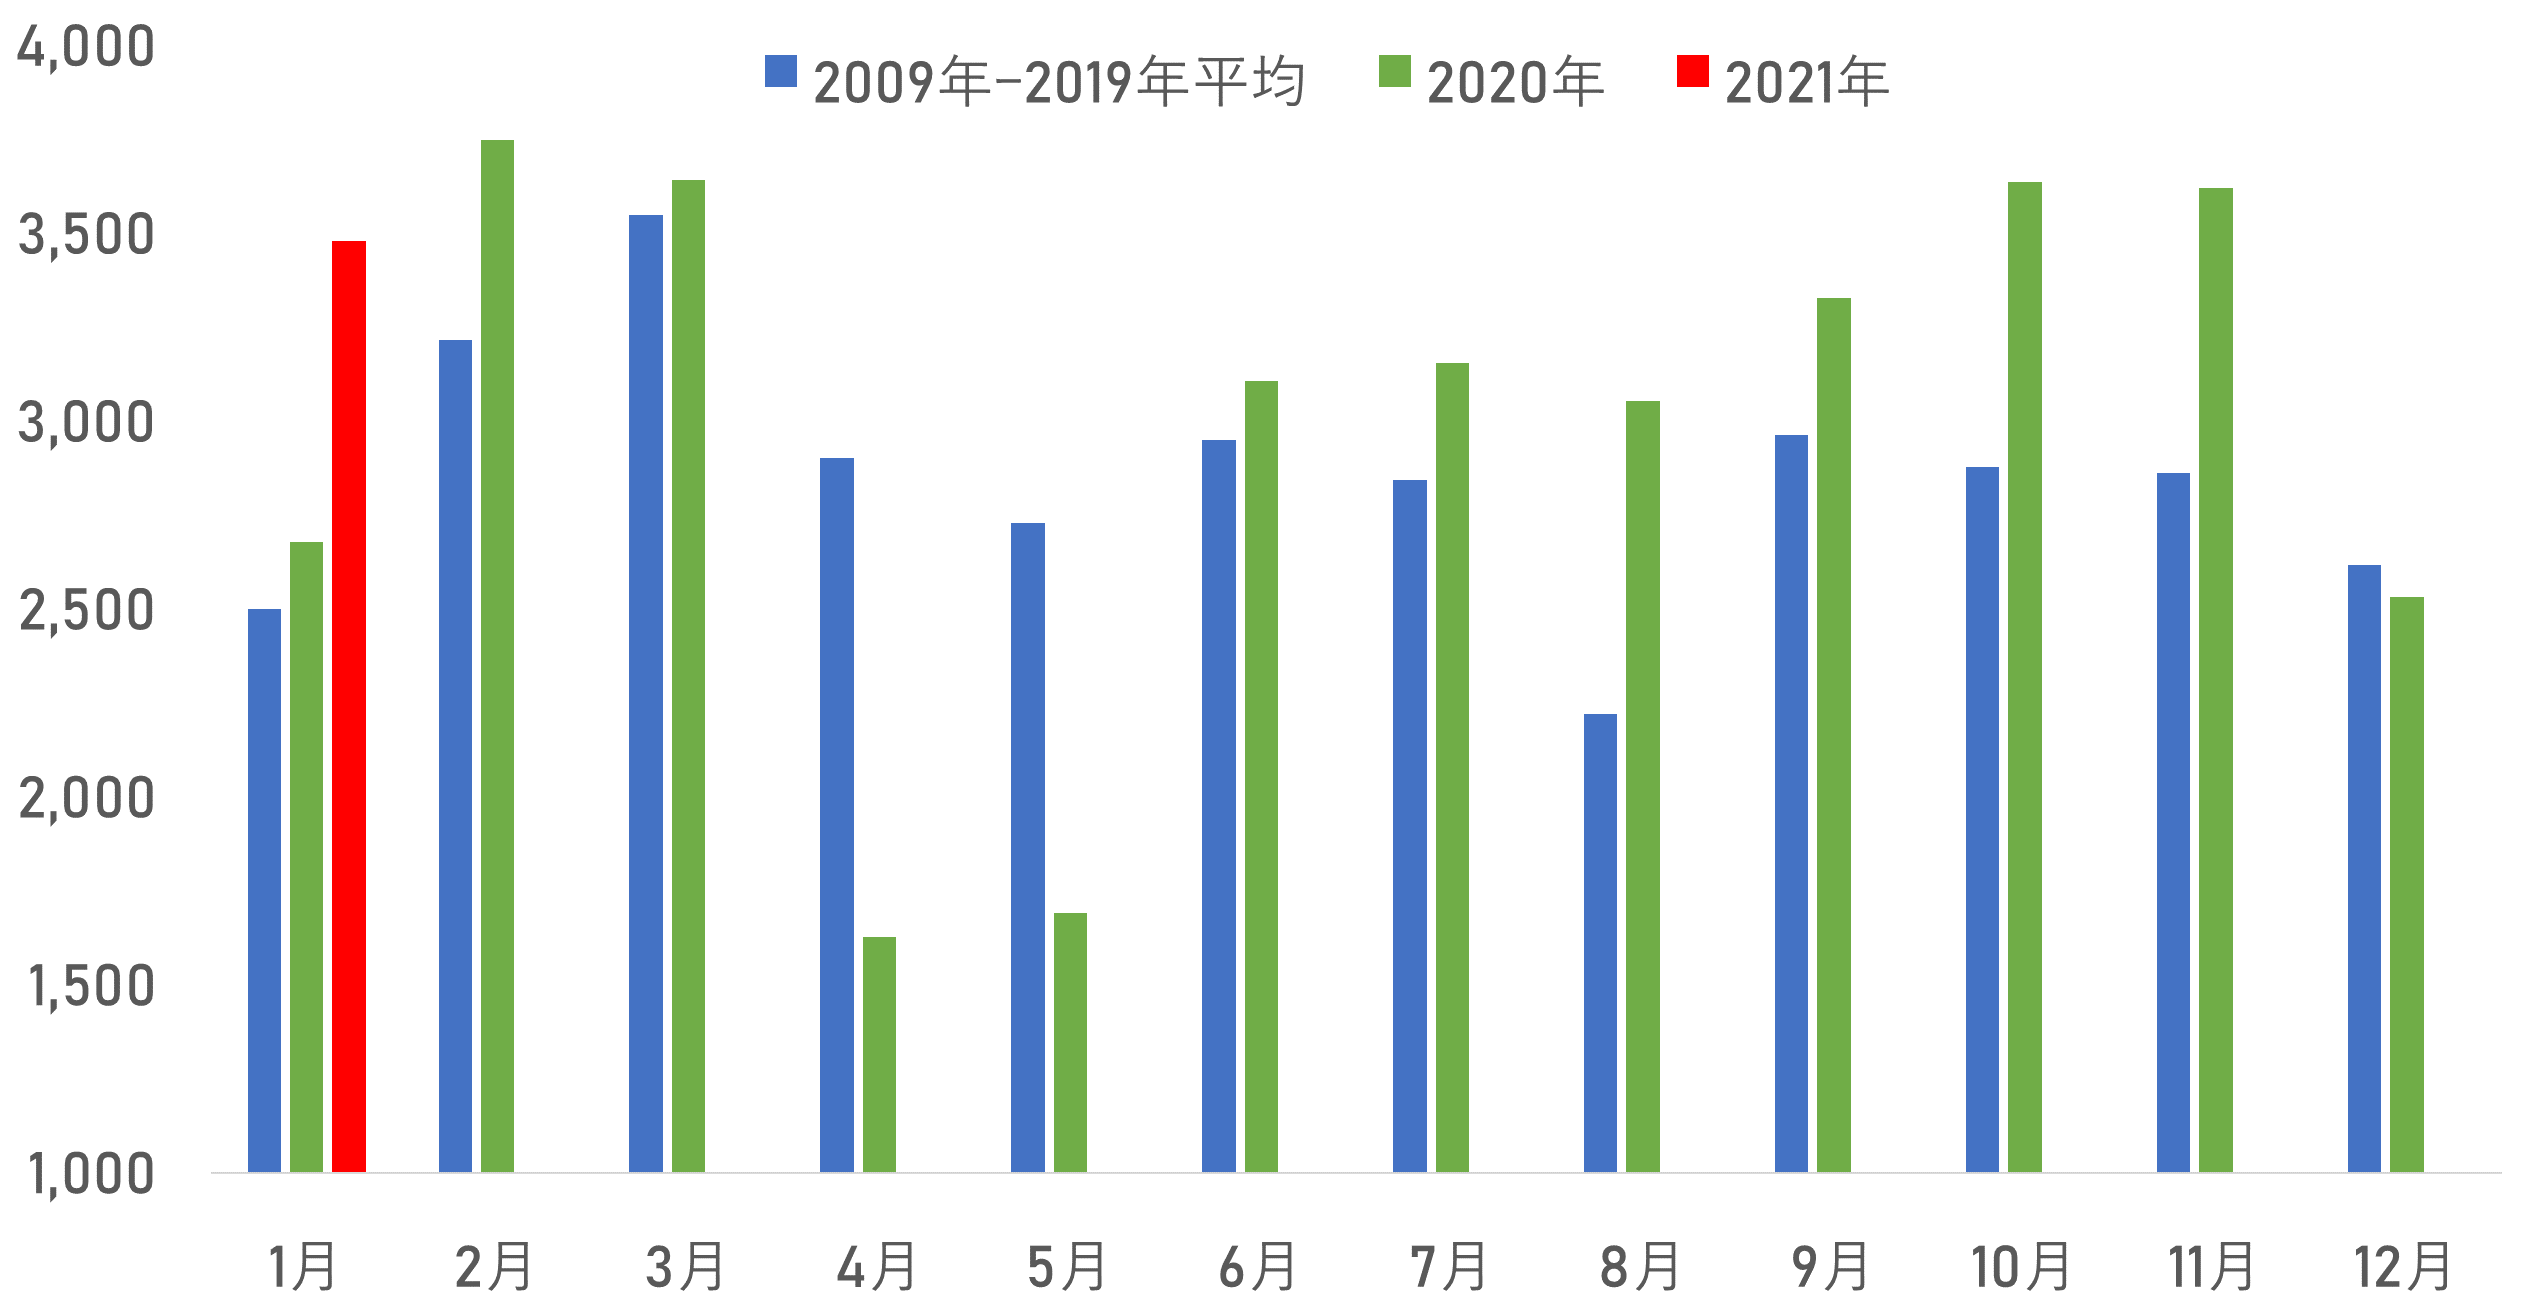 月別 首都圏中古マンション成約件数の比較(2009年―2019年平均、2020年、2021年)(件)